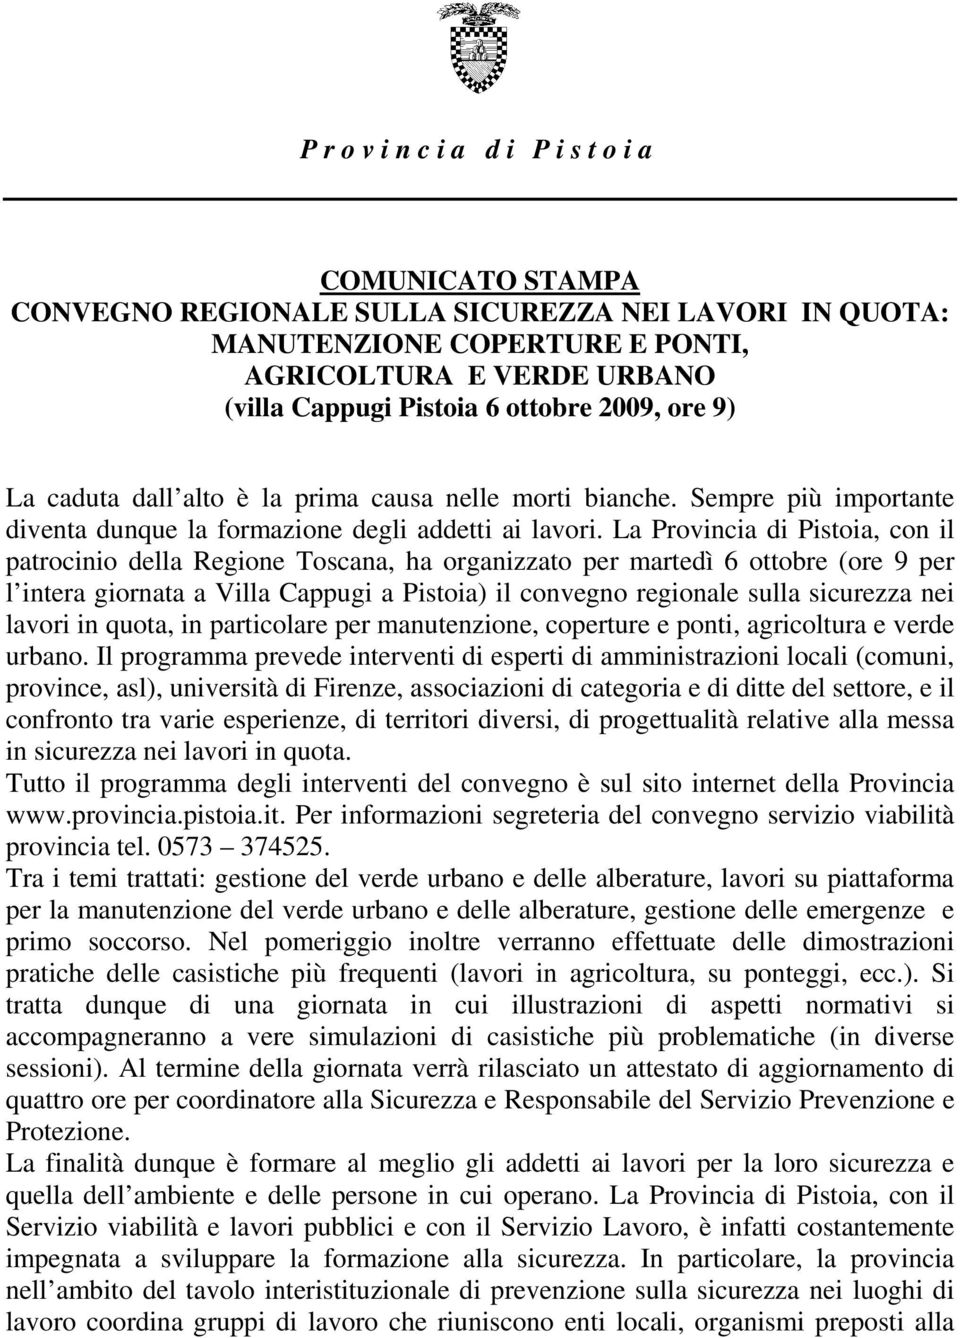 La Provincia di Pistoia, con il patrocinio della Regione Toscana, ha organizzato per martedì 6 ottobre (ore 9 per l intera giornata a Villa Cappugi a Pistoia) il convegno regionale sulla sicurezza